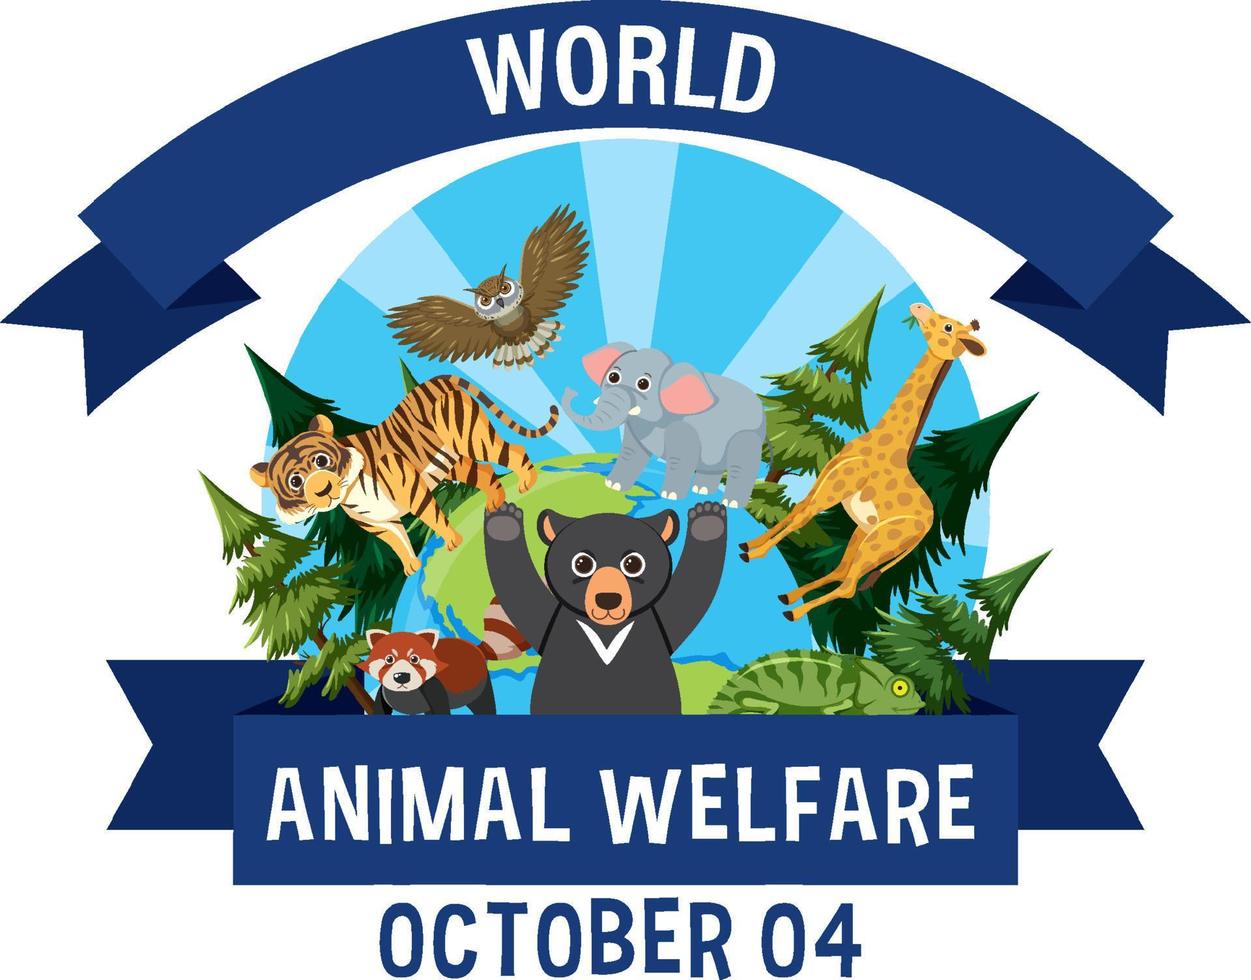 affiche de la journée mondiale du bien-être animal vecteur